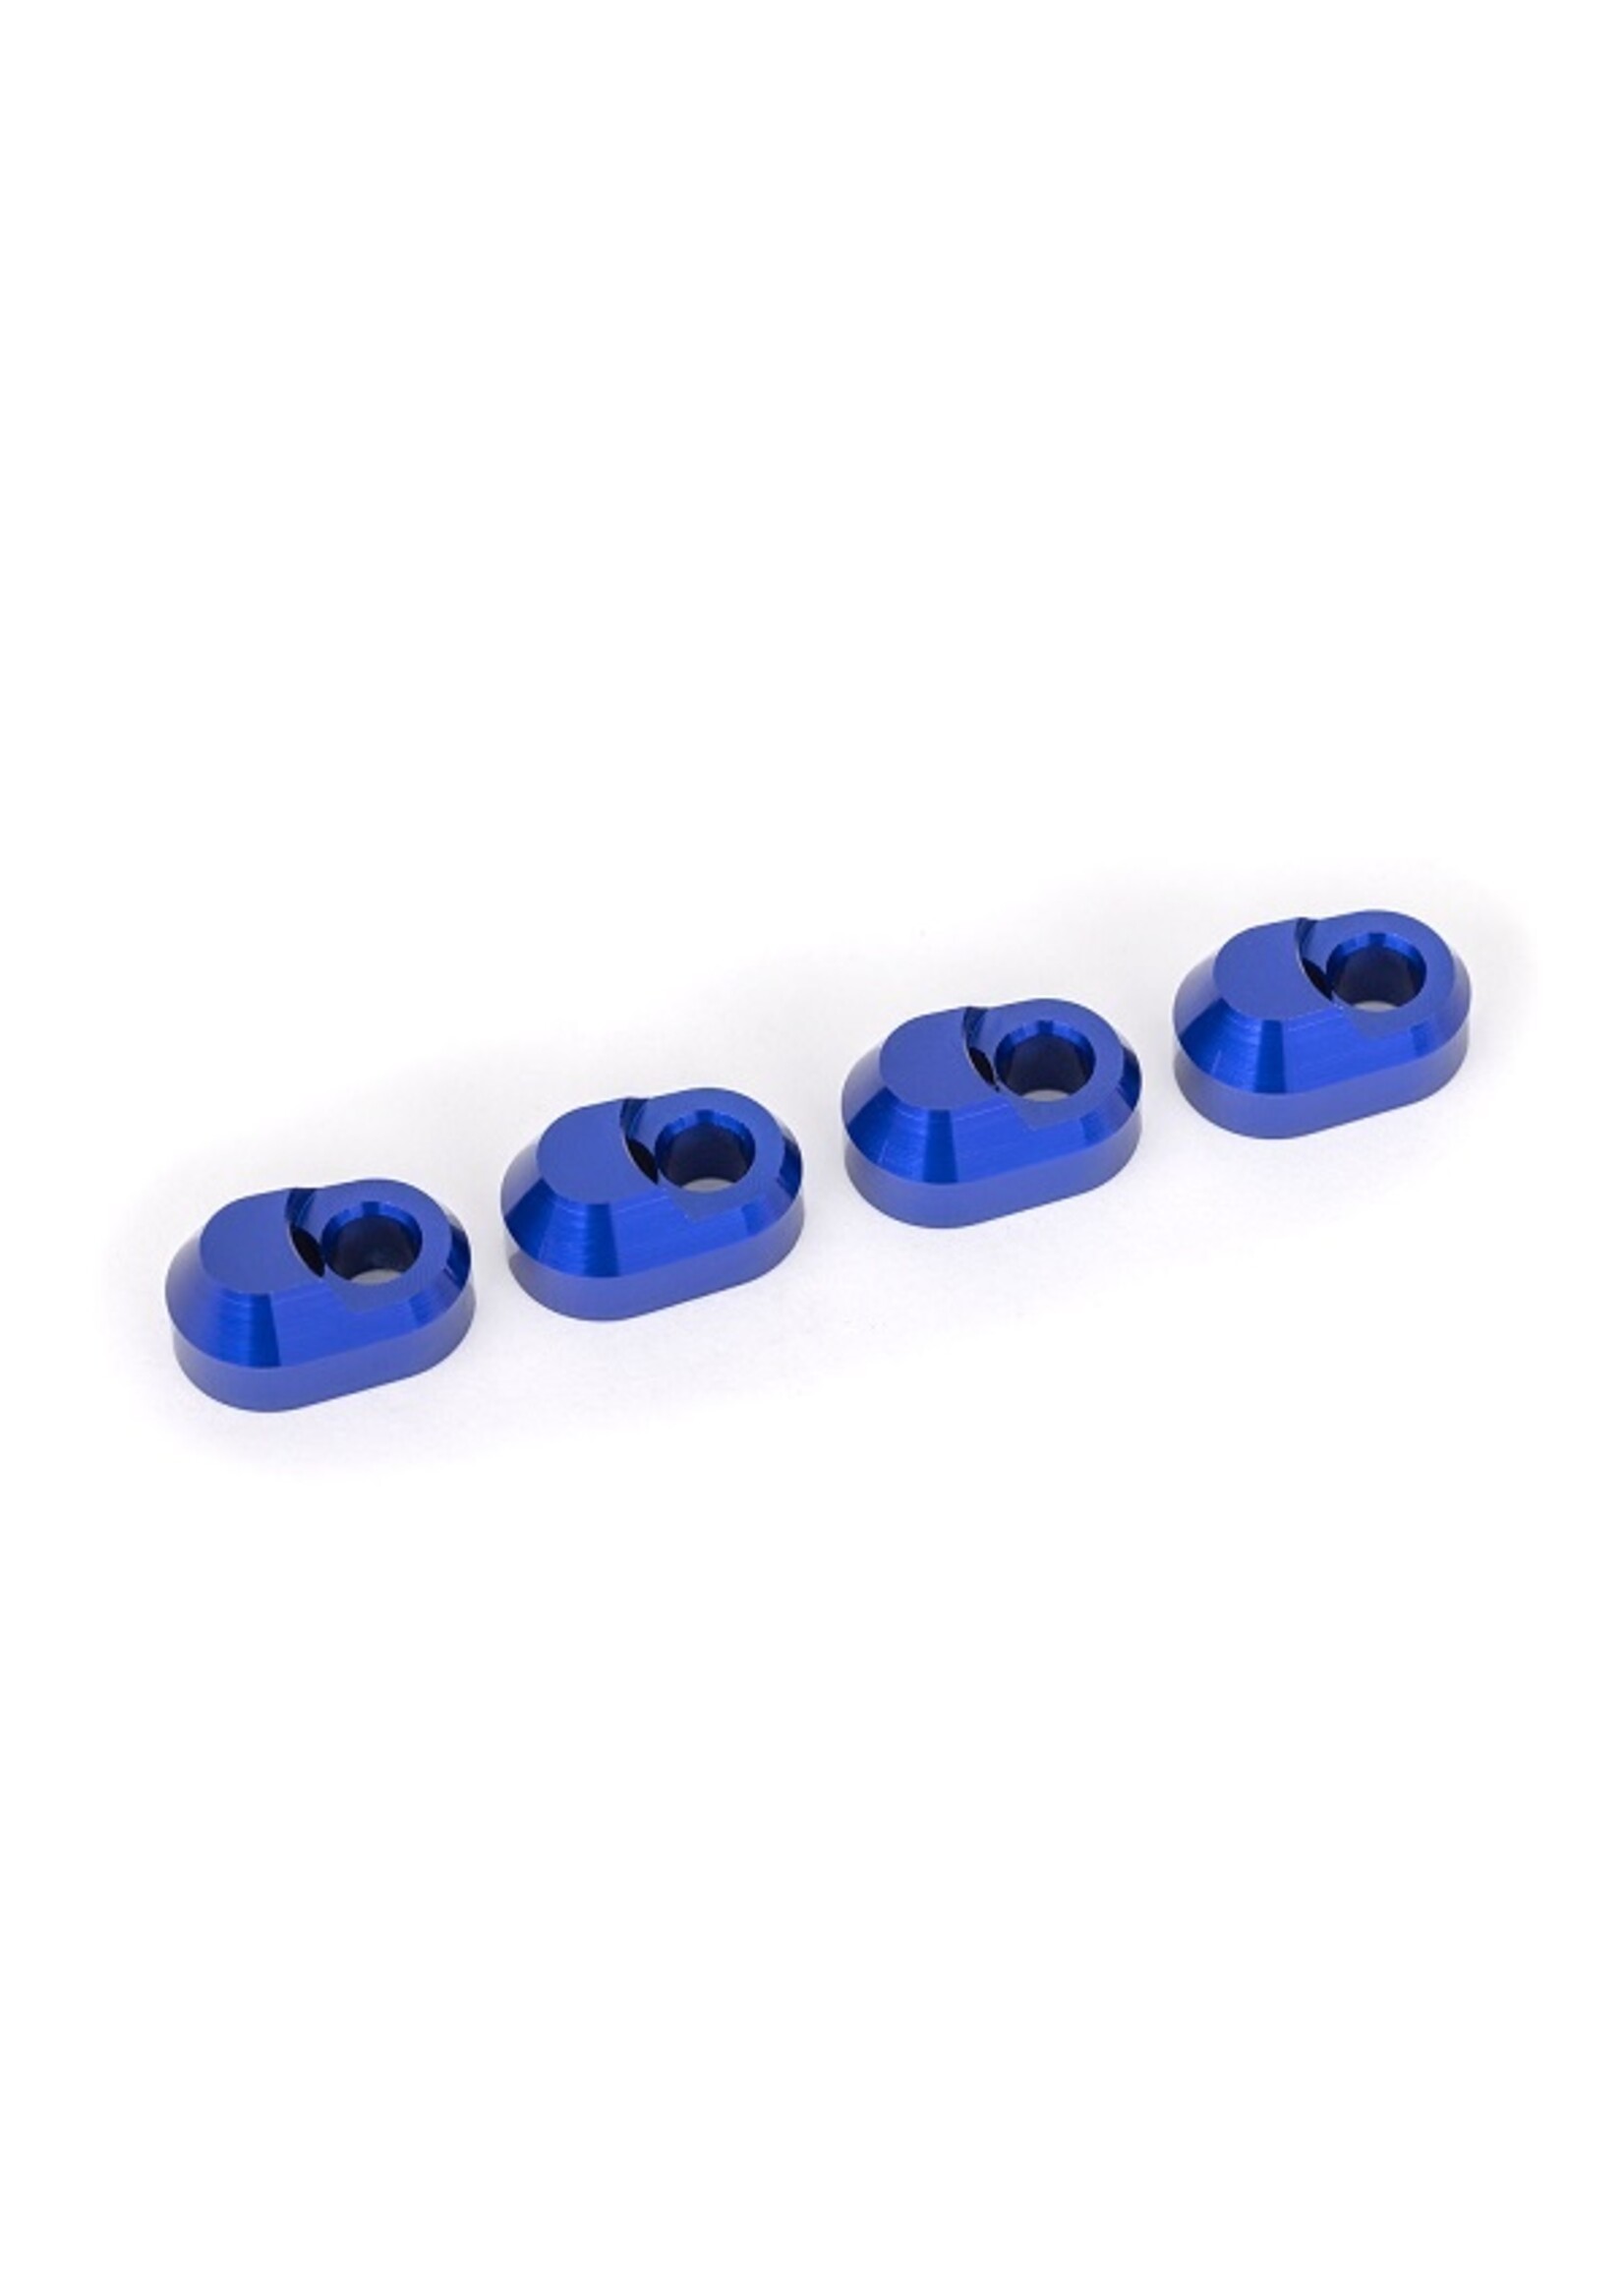 Traxxas 7743-BLUE - Aluminum Suspension Pin Retainer - Blue